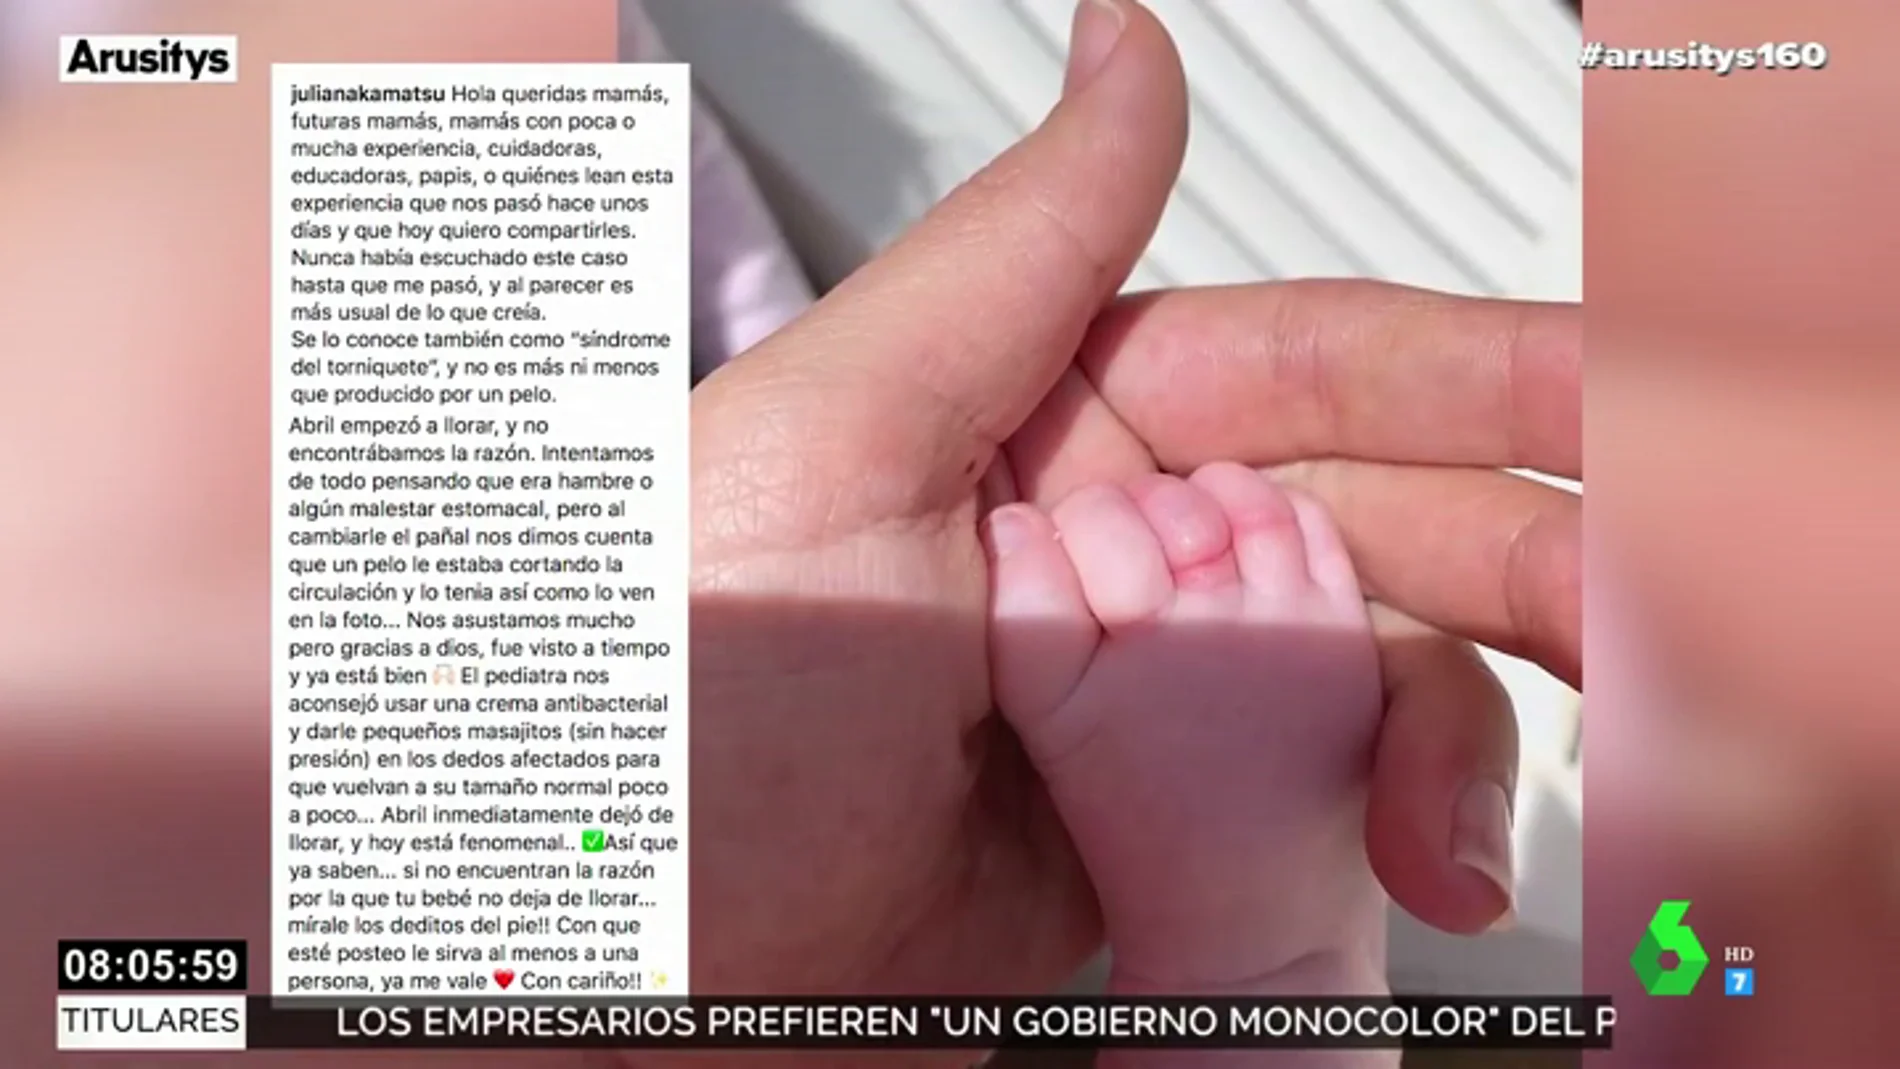 La hija recién nacida de Melendi y Julia Nakamatsu se recupera tras sufrir el síndrome del torniquete